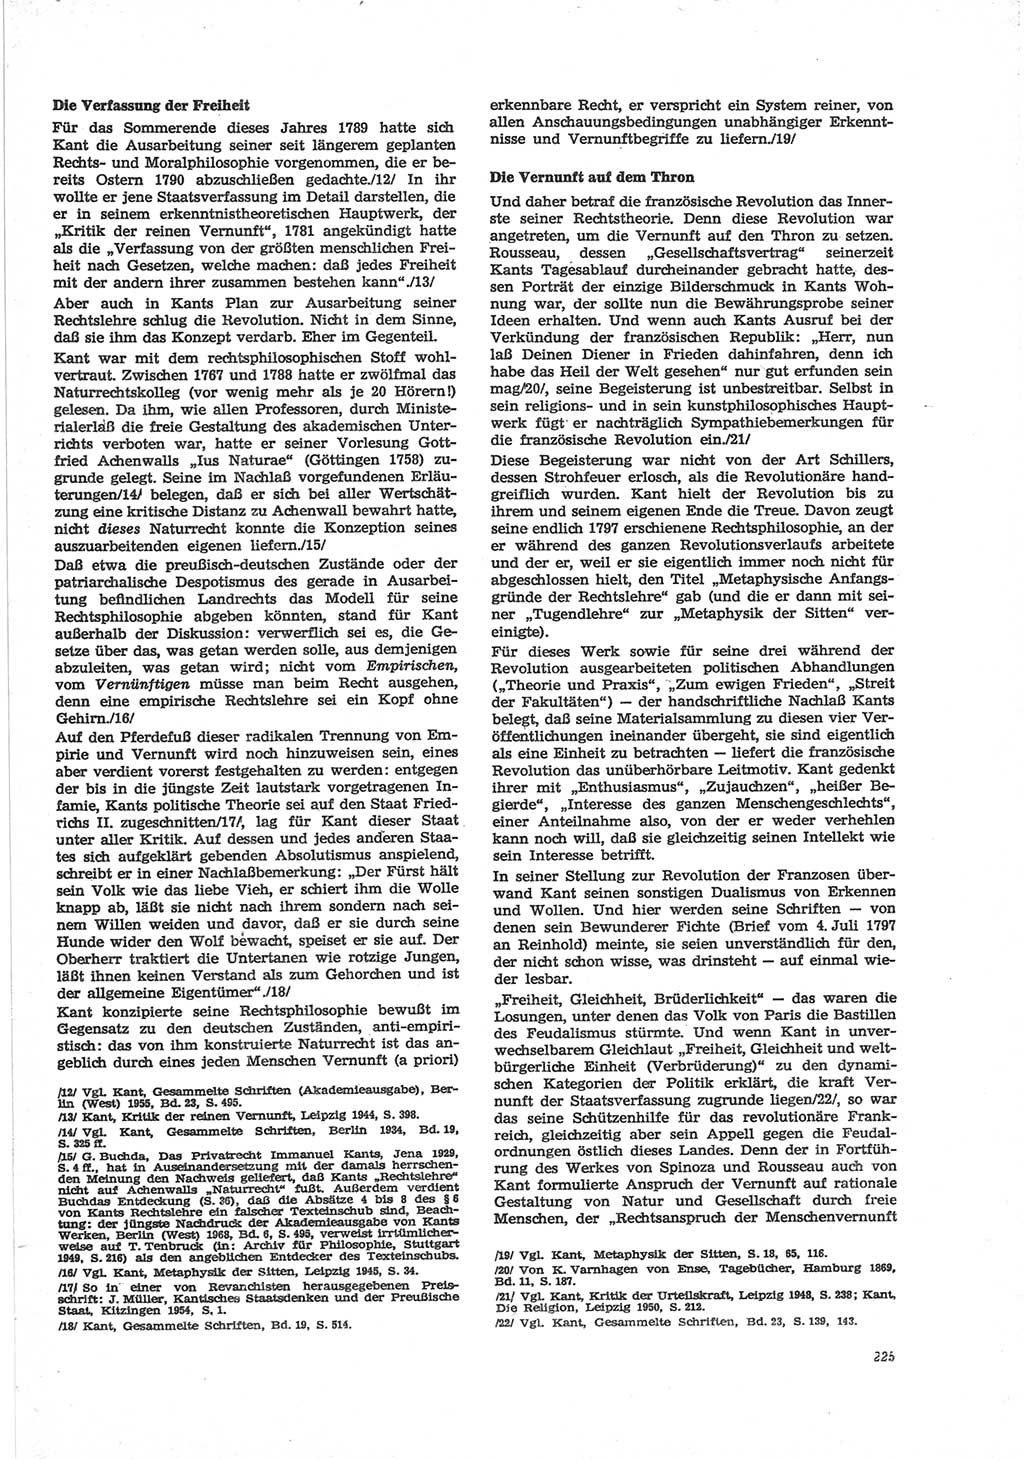 Neue Justiz (NJ), Zeitschrift für Recht und Rechtswissenschaft [Deutsche Demokratische Republik (DDR)], 28. Jahrgang 1974, Seite 225 (NJ DDR 1974, S. 225)